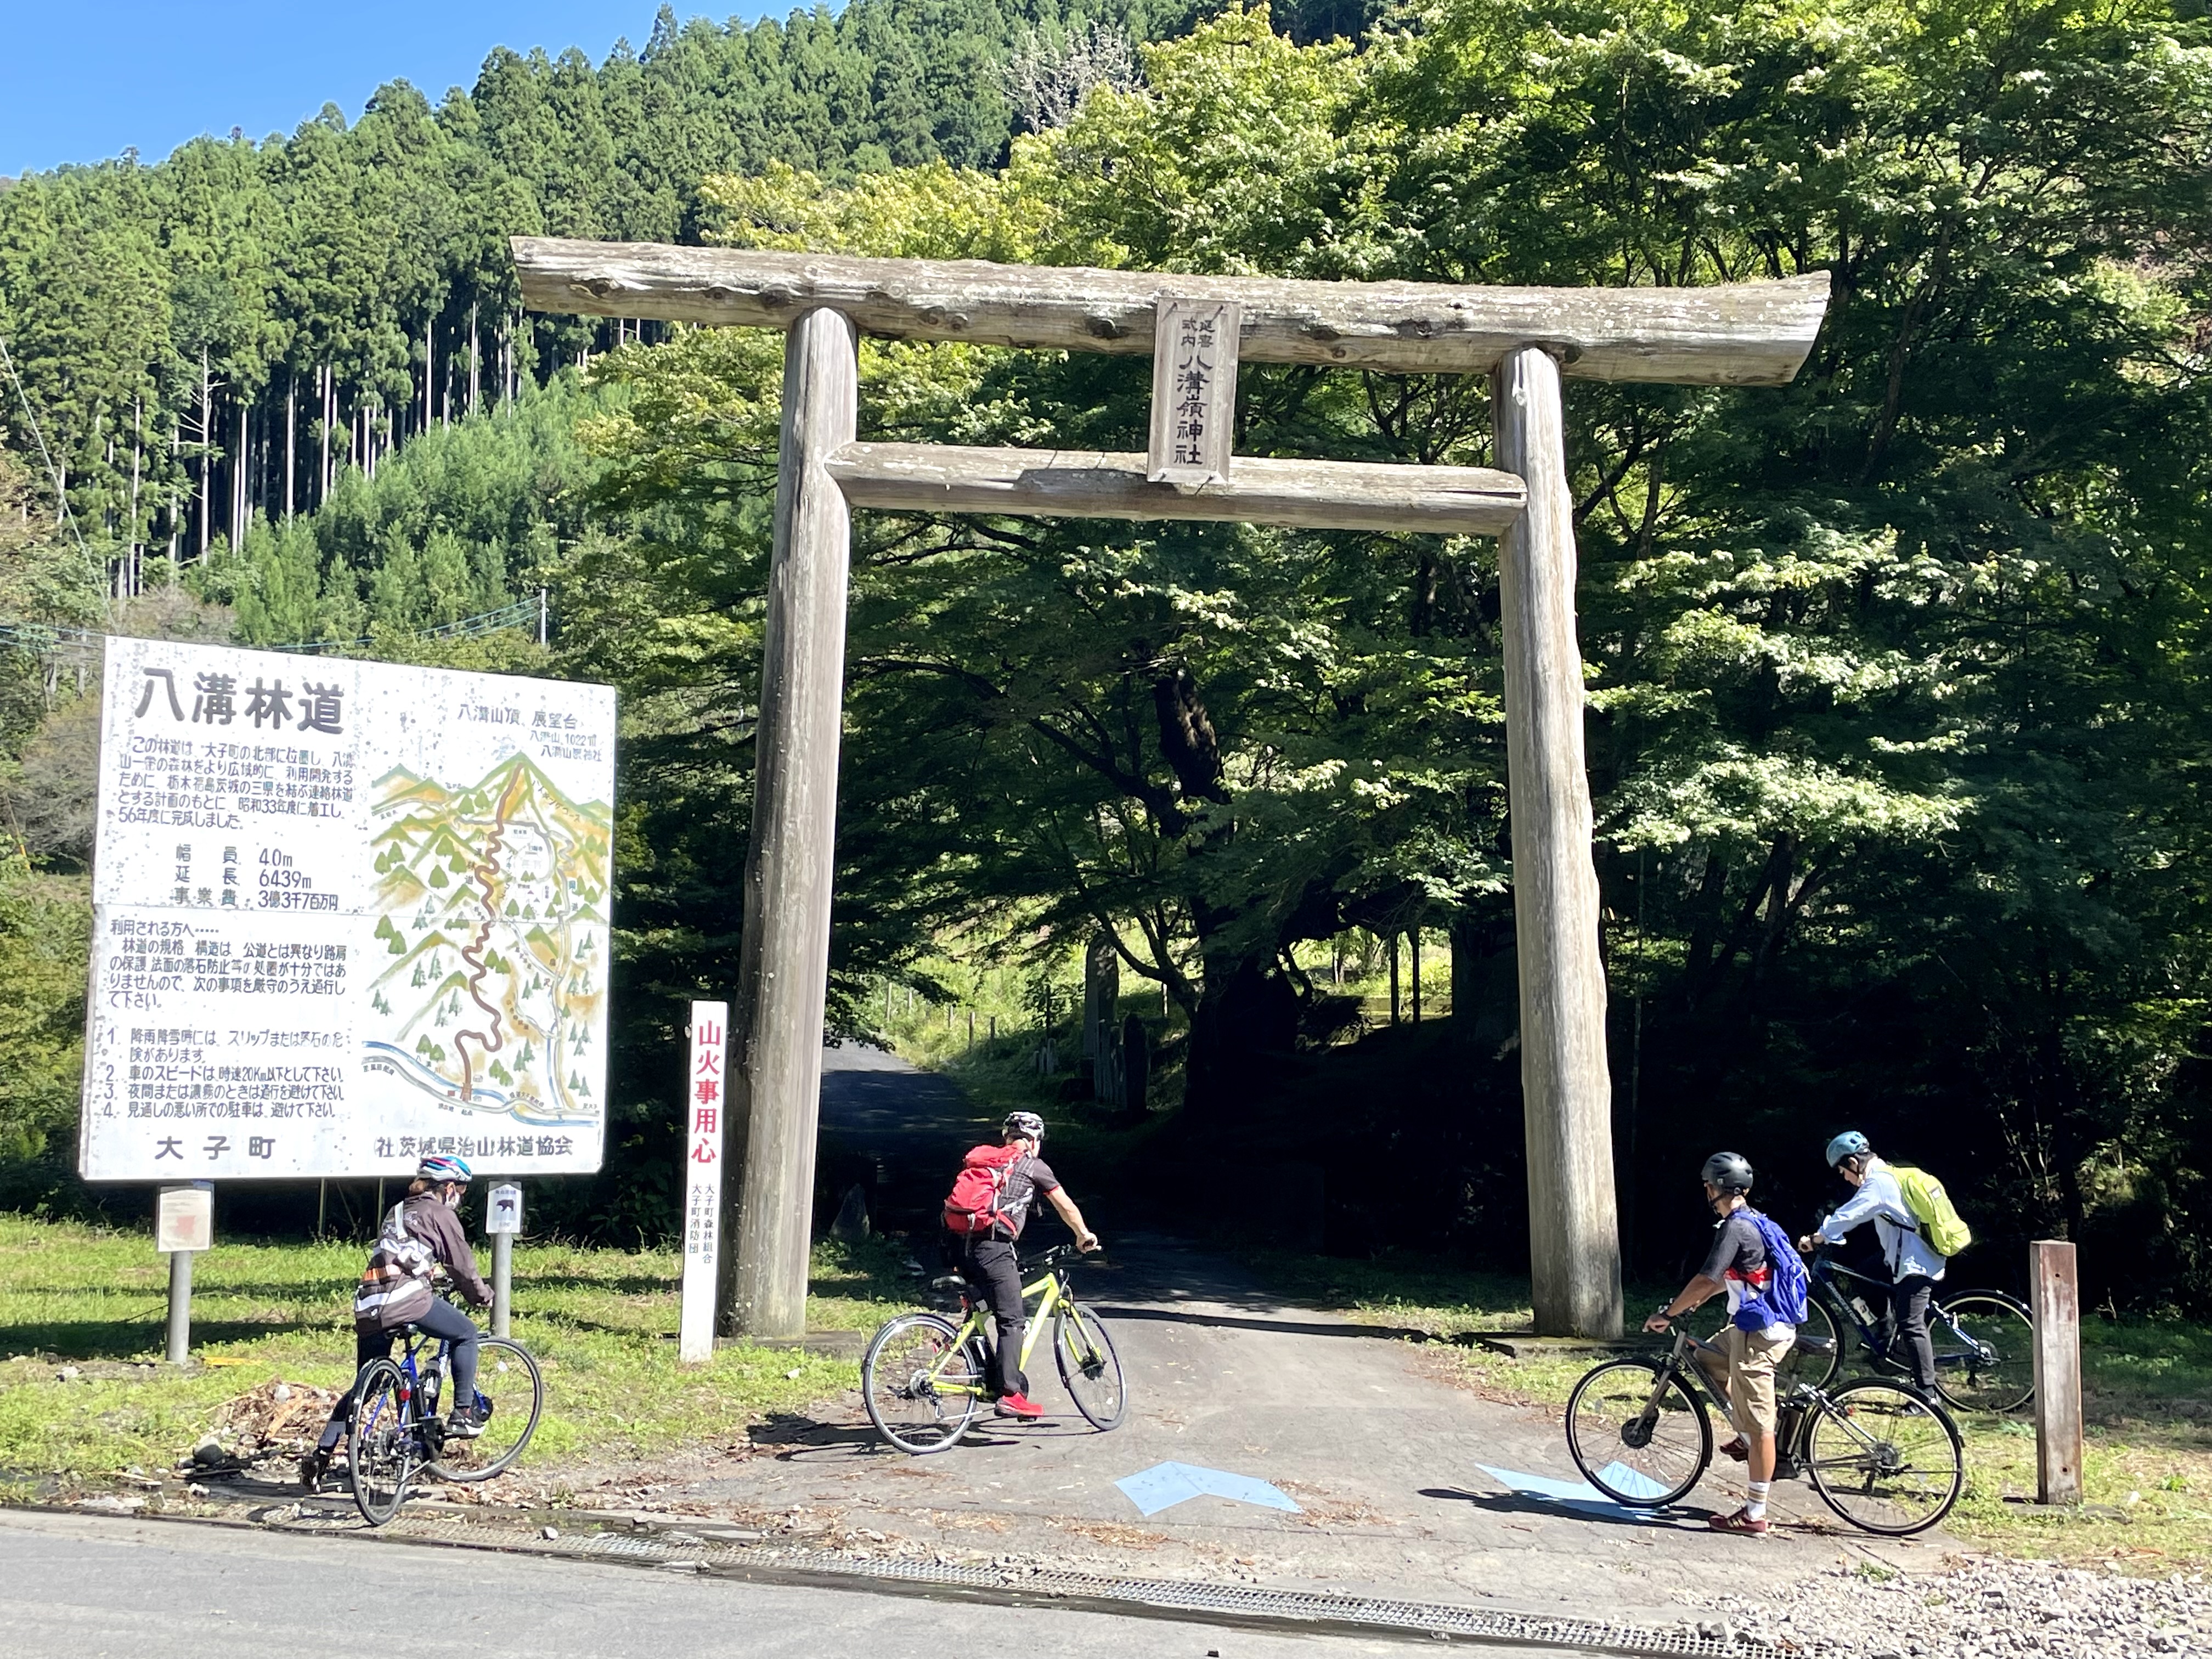 【茨城県】奥久慈ヒルクライムルート 1泊2日で滝をめぐり坂を楽しむサイクリングレポート《PR》